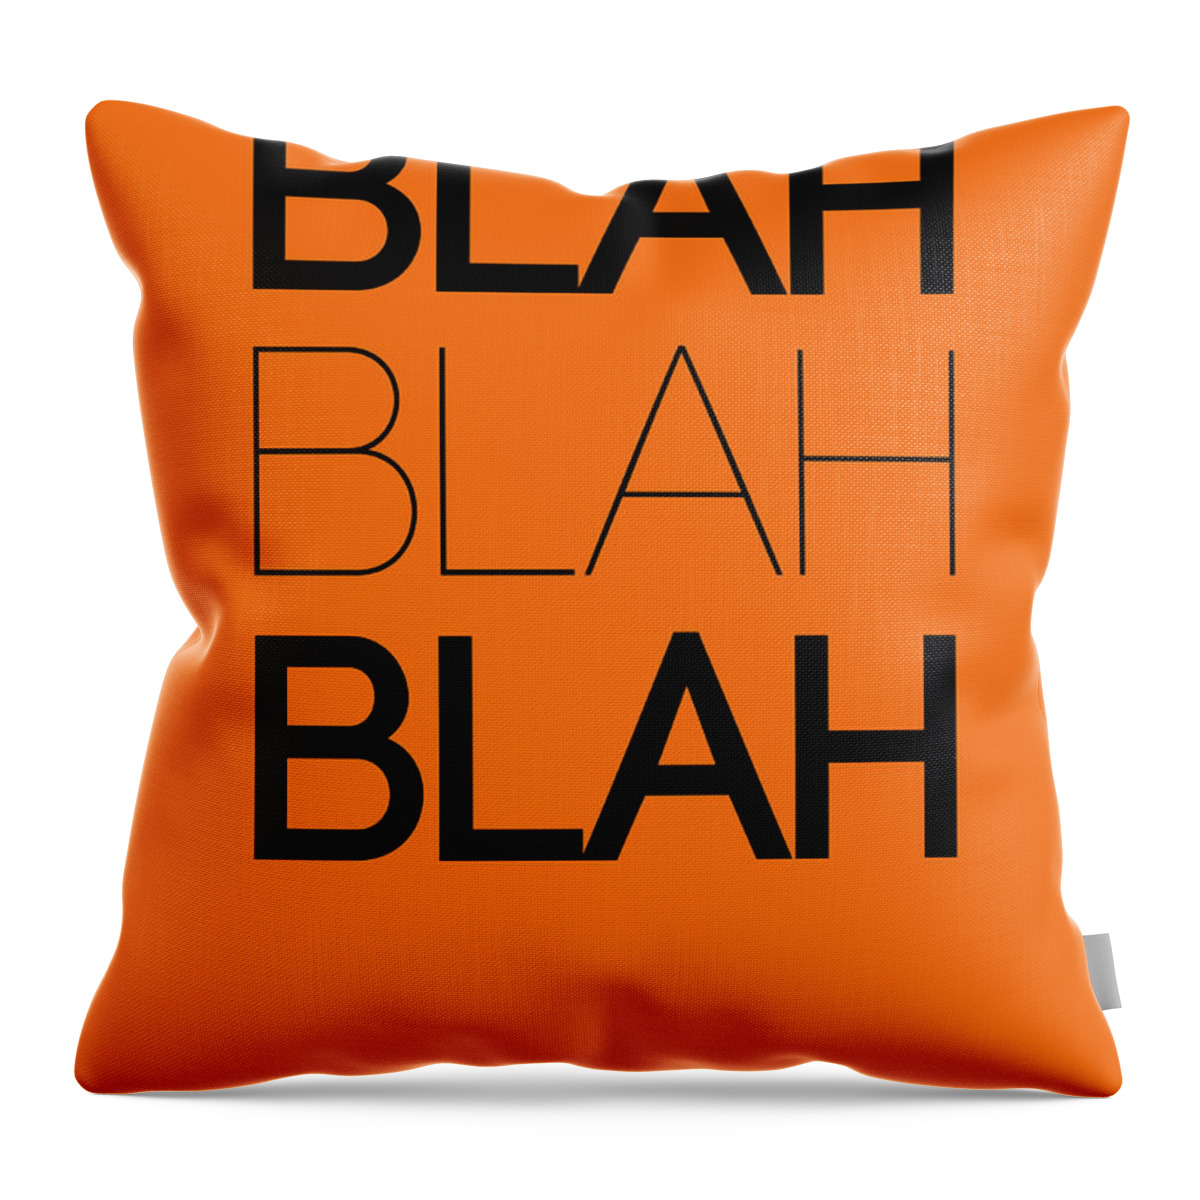 Motivational Throw Pillow featuring the digital art BLAH BLAH BLAH Orange Poster by Naxart Studio